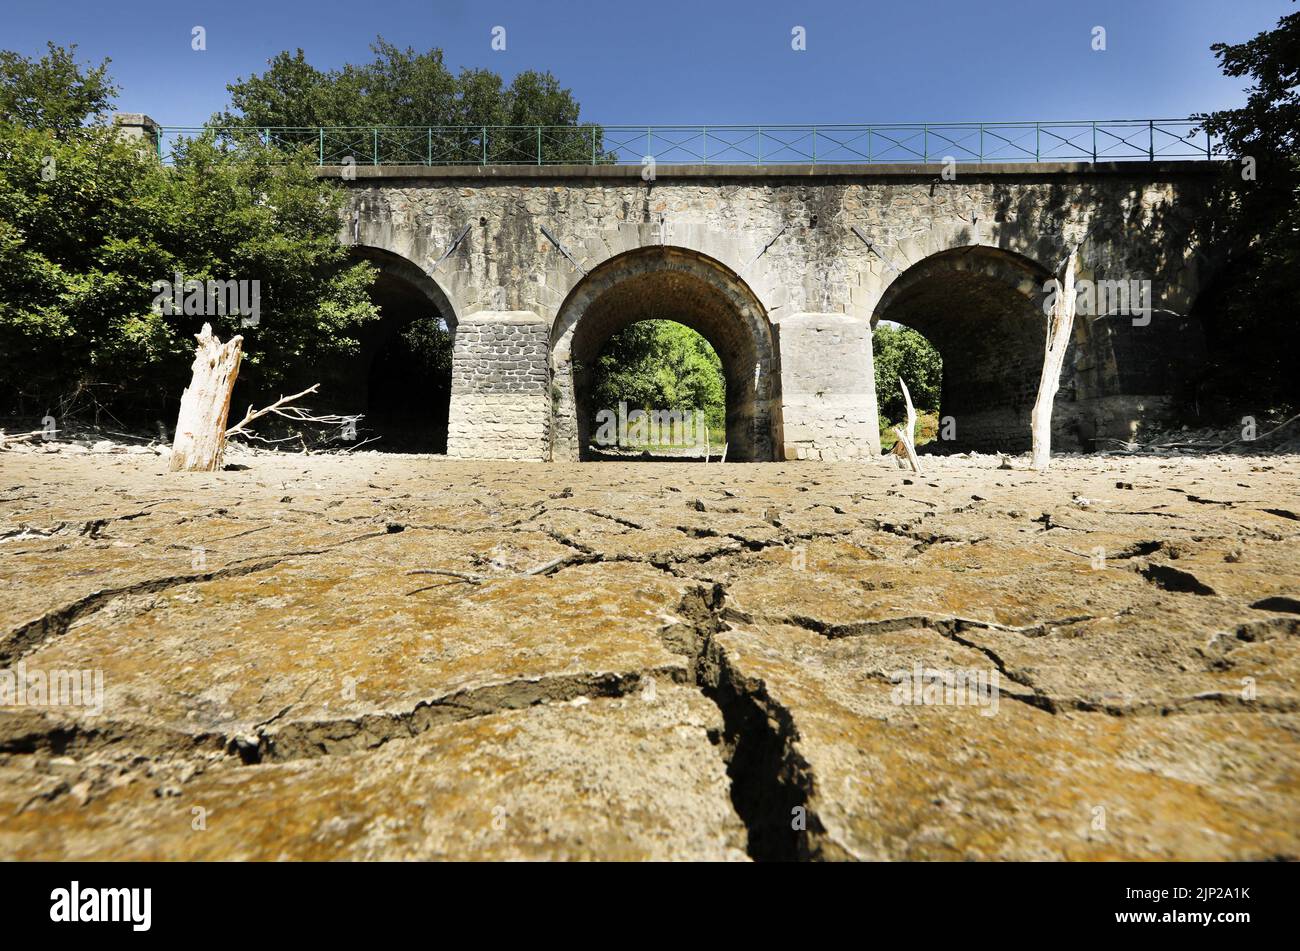 La sécheresse a transformé la rivière Gardon en un ORD saharien. L'Organisation météorologique mondiale a annoncé mardi, 9 août 2022, que le 2022 juillet avait été l'un des trois juillet les plus chauds jamais enregistrés dans le monde. Le Gard est à nouveau sur la vigilance orange des vagues de chaleur en raison des températures élevées enregistrées. Les 40 degrés pourraient être à nouveau dépassés en août à Nîmes. Cette nouvelle vague de chaleur fait suite à un mois de juillet déjà très chaud et très sec. Selon Météo France 'il était plus chaud à Nîmes qu'au Caire en juillet avec des températures maximales moyennes de 36 degrés'.Anduze, France sur 13 août 2022.Phot Banque D'Images